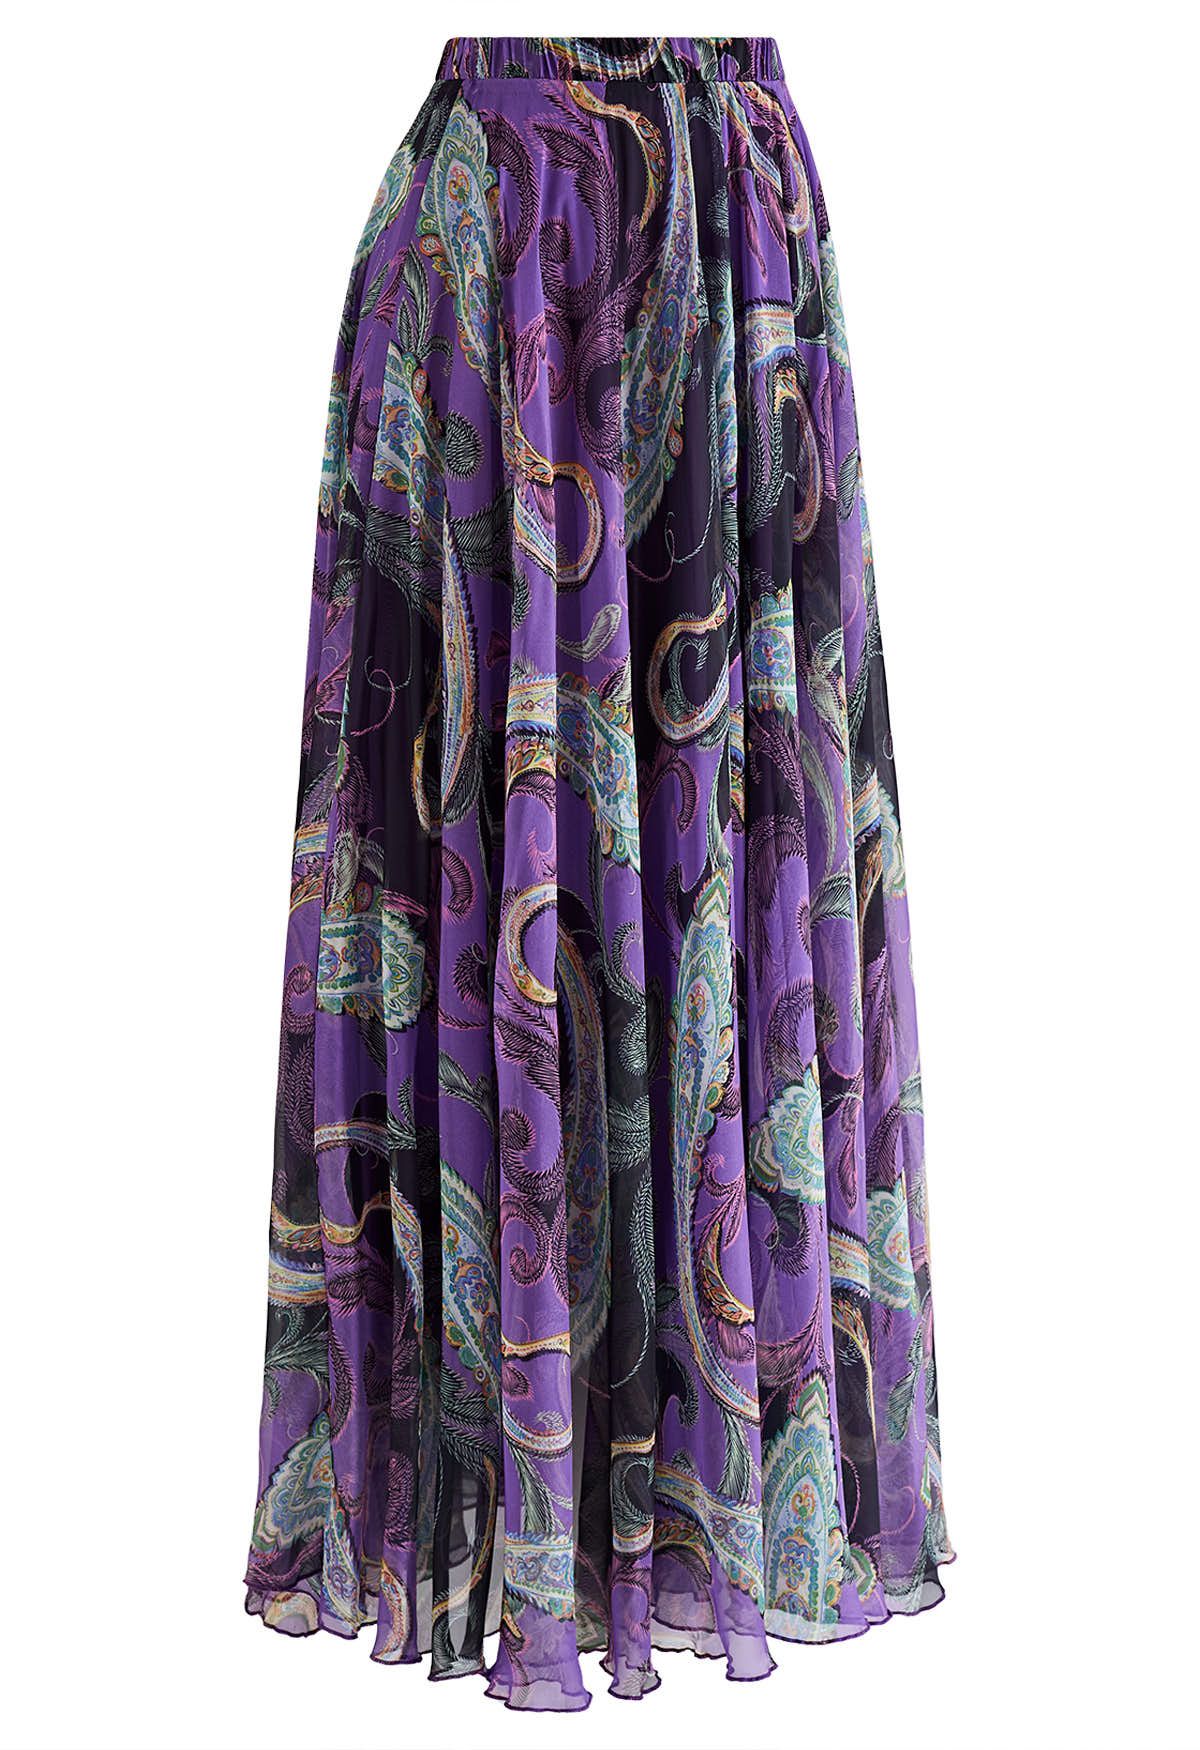 Falda larga de gasa Paisley exótica en morado